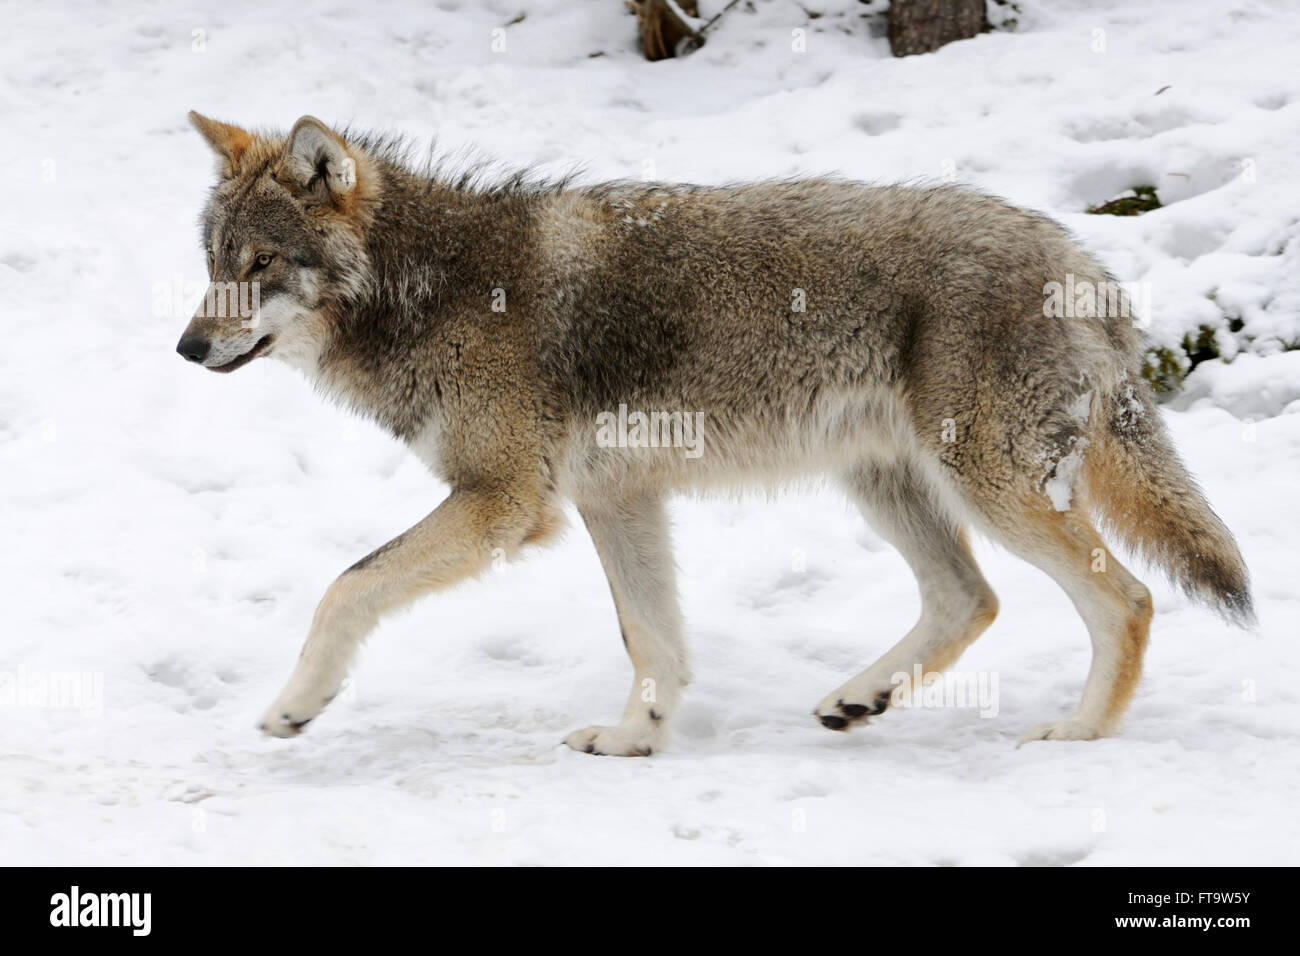 Lobo euroasiático / lobo gris ( Canis lupus ) en piel de invierno, presentando rasgos típicos en el entorno cubierto de nieve. Foto de stock